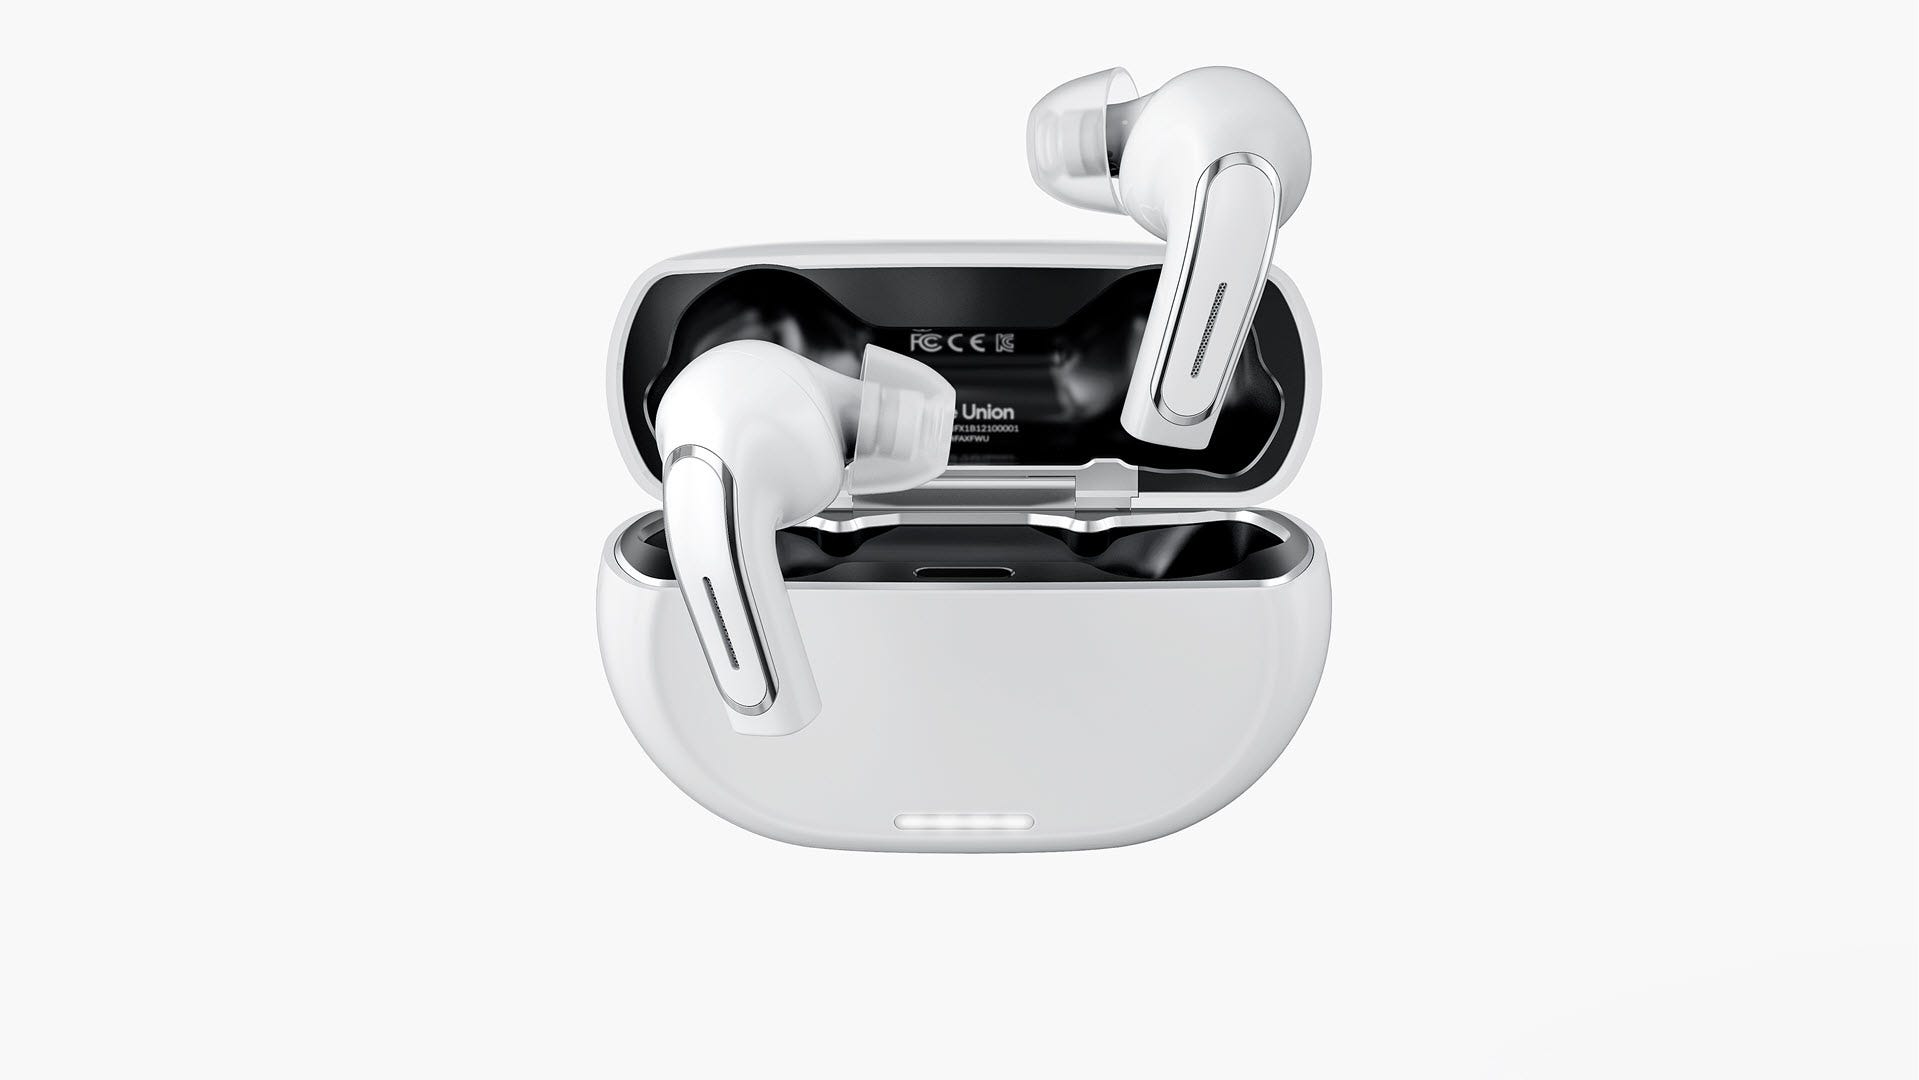 Olive Pro hörlurar kombinerar hörapparater med äkta trådlösa hörlurar